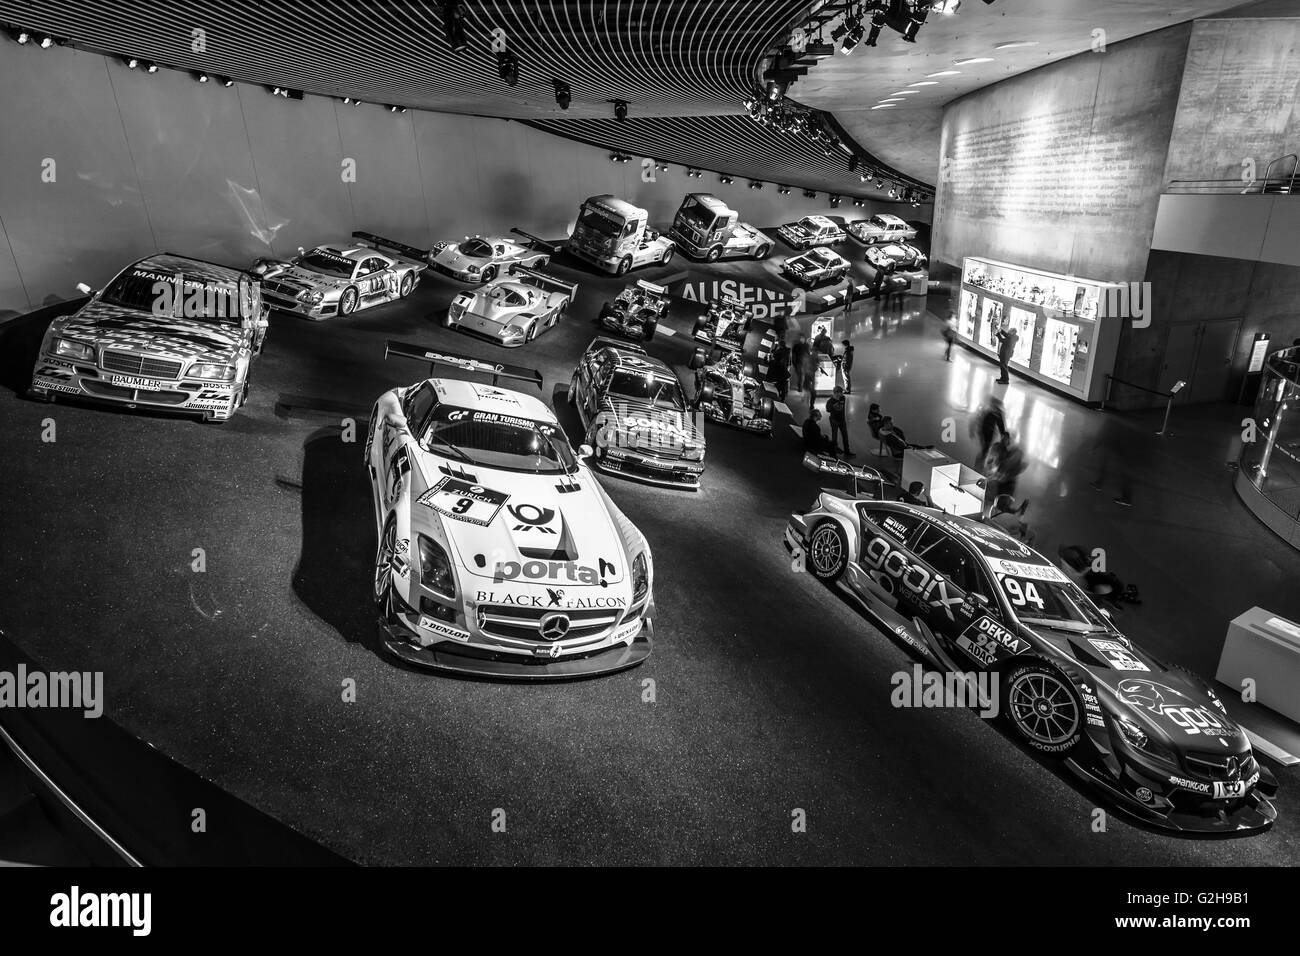 STUTTGART, Deutschland - 19. März 2016: Galerie der Sport- und Rennfahrzeuge verschiedener Klassen. Schwarz und weiß. Stockfoto